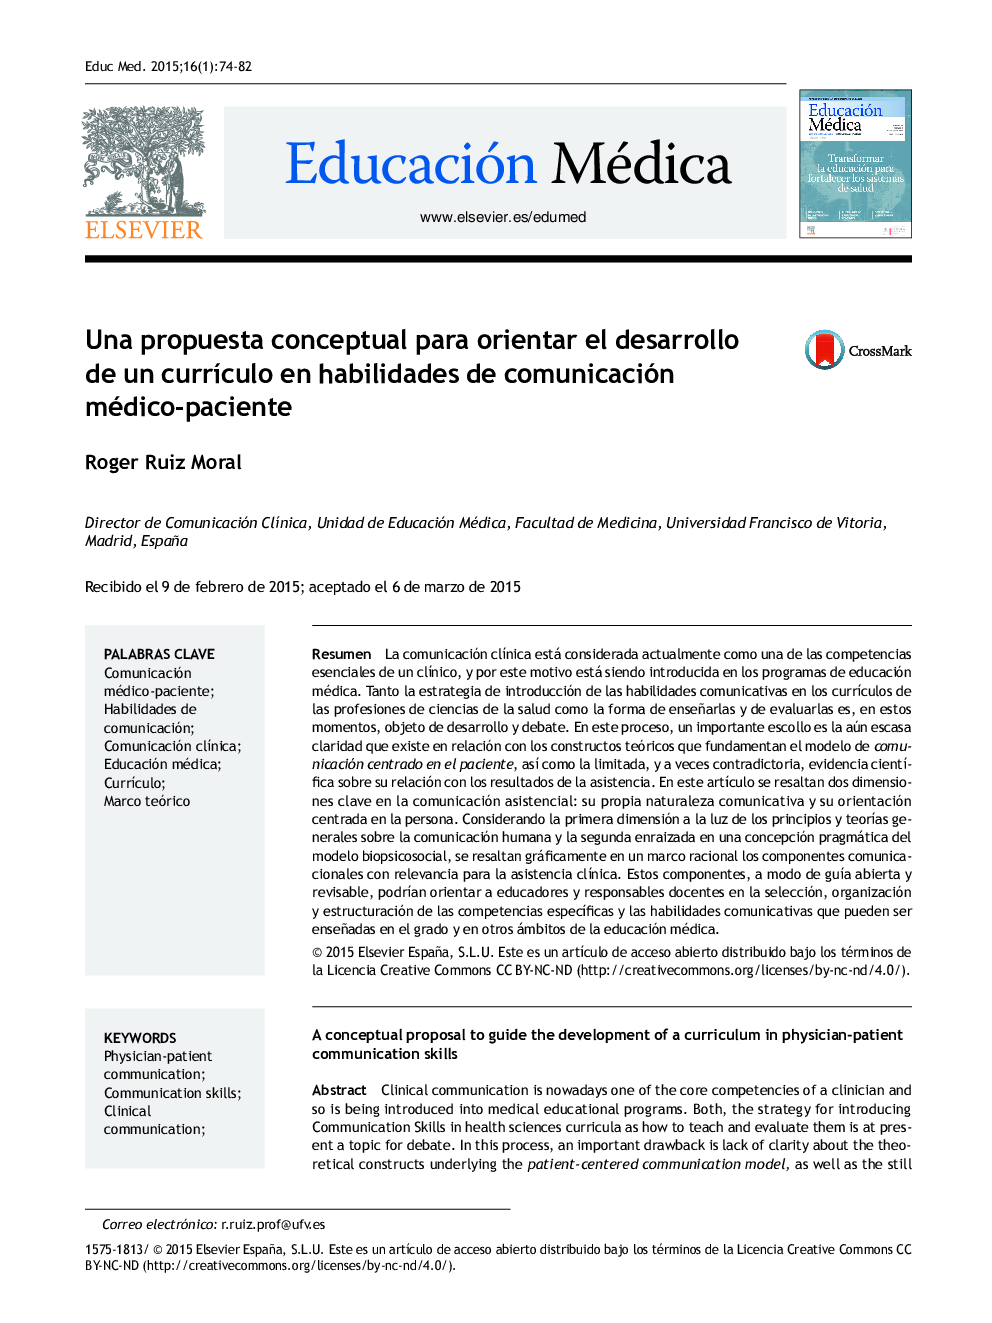 Una propuesta conceptual para orientar el desarrollo de un currículo en habilidades de comunicación médico-paciente